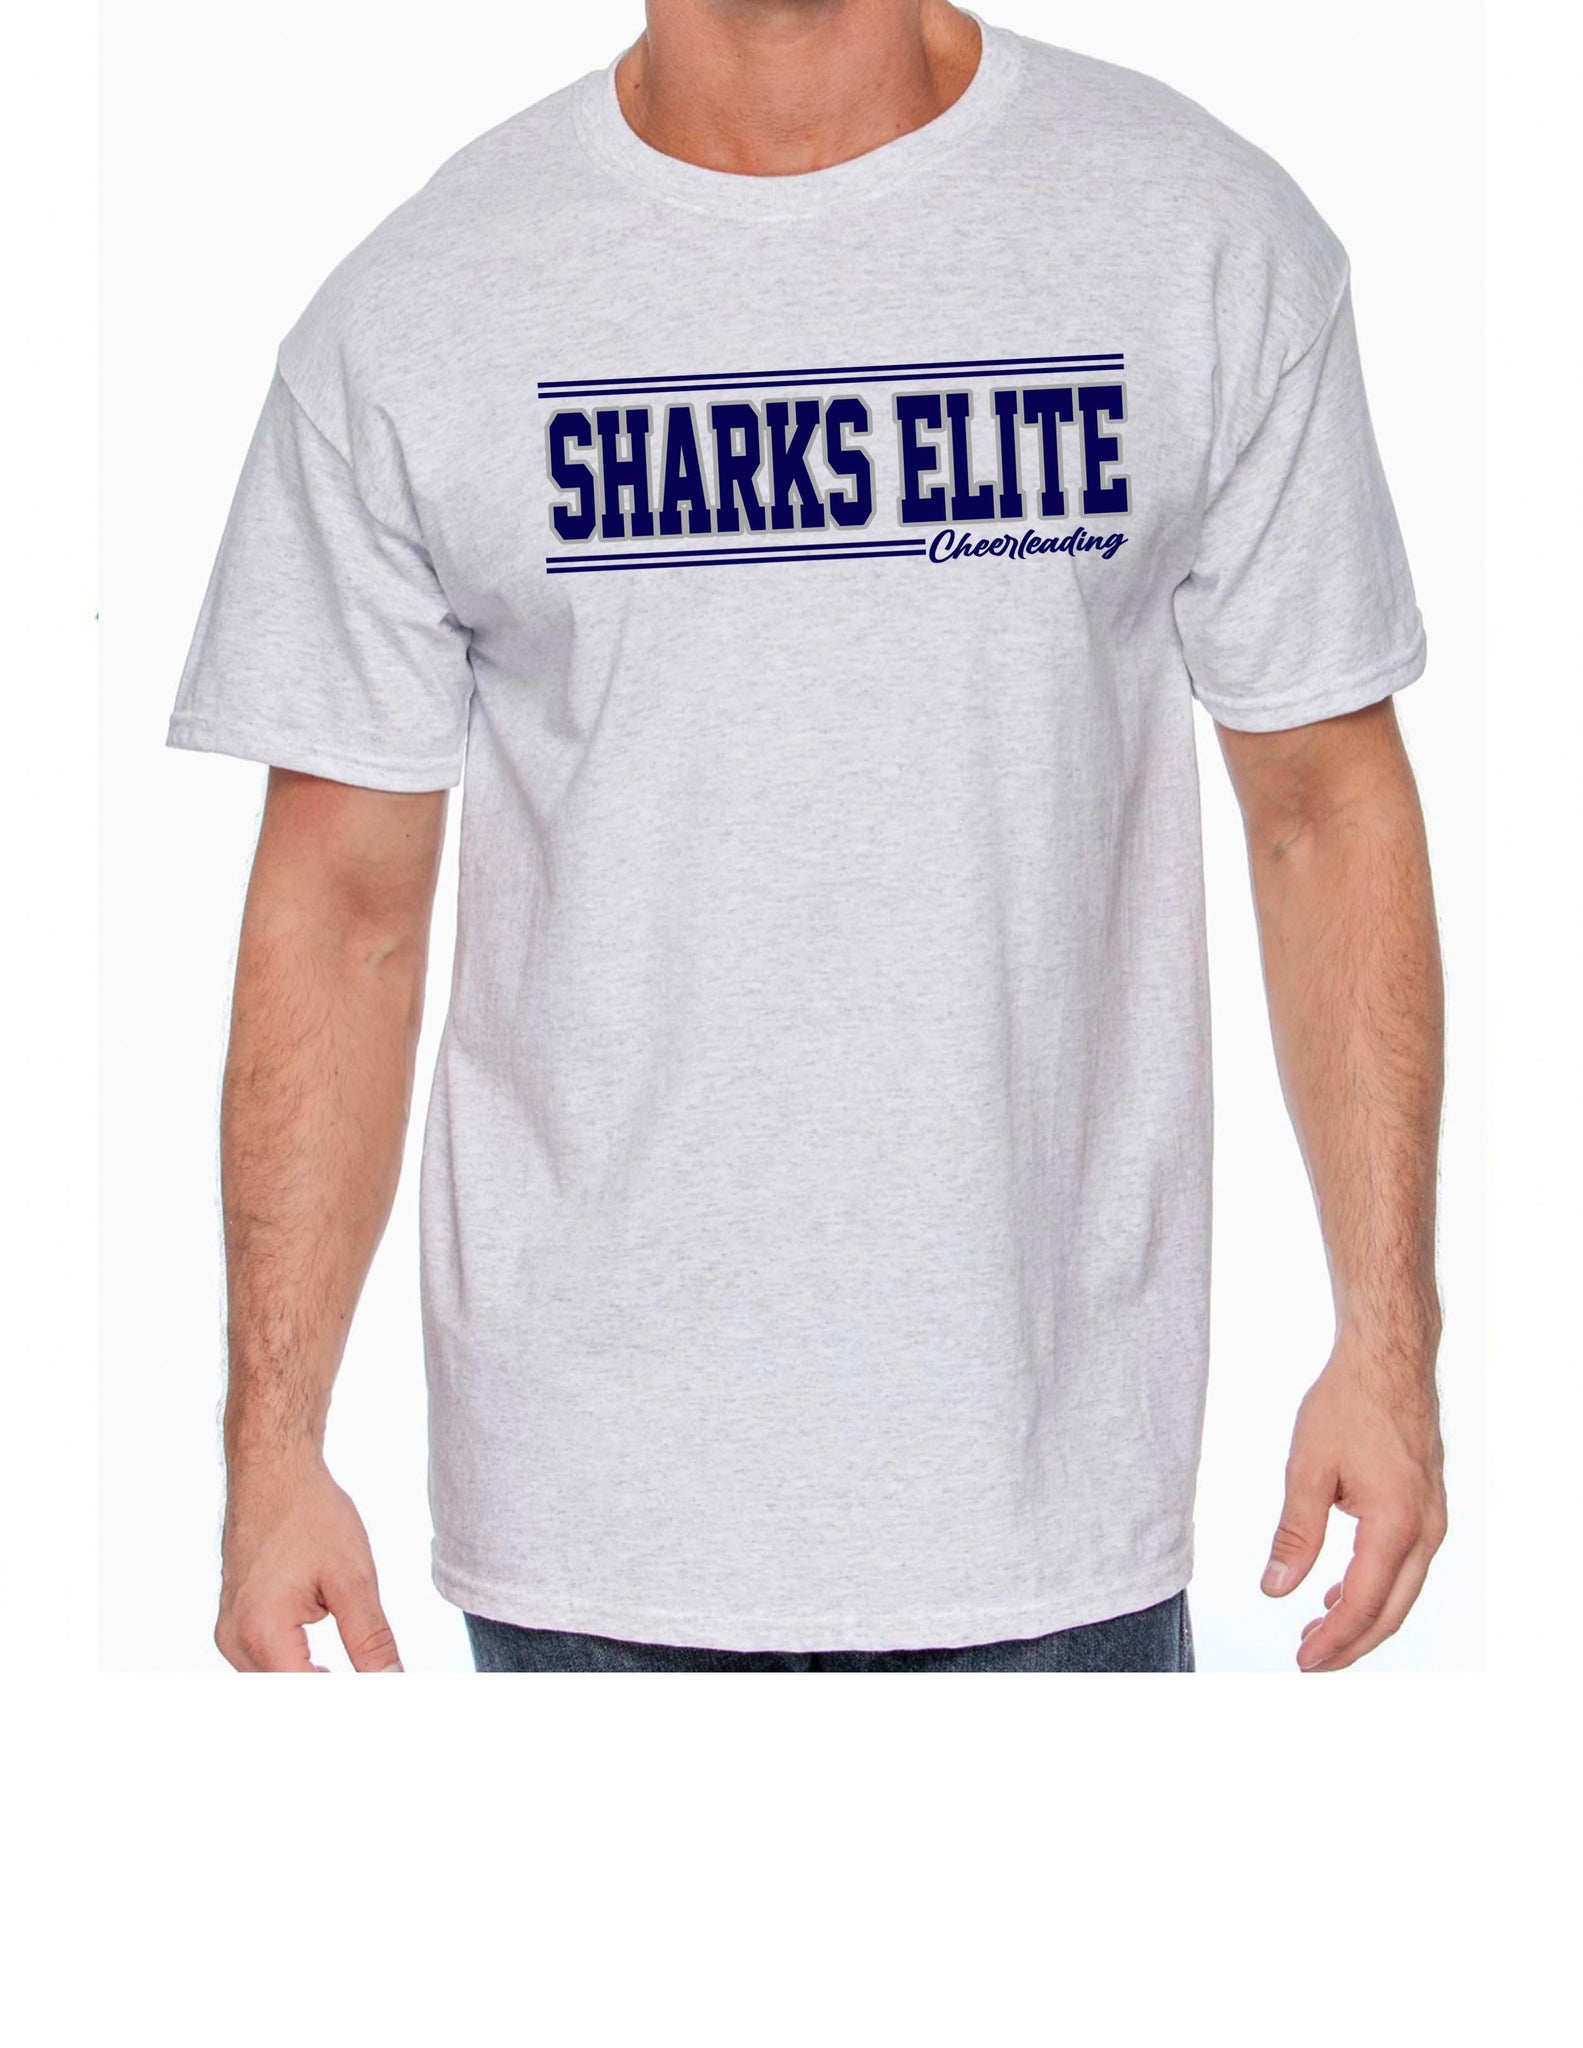 Sharks Elite